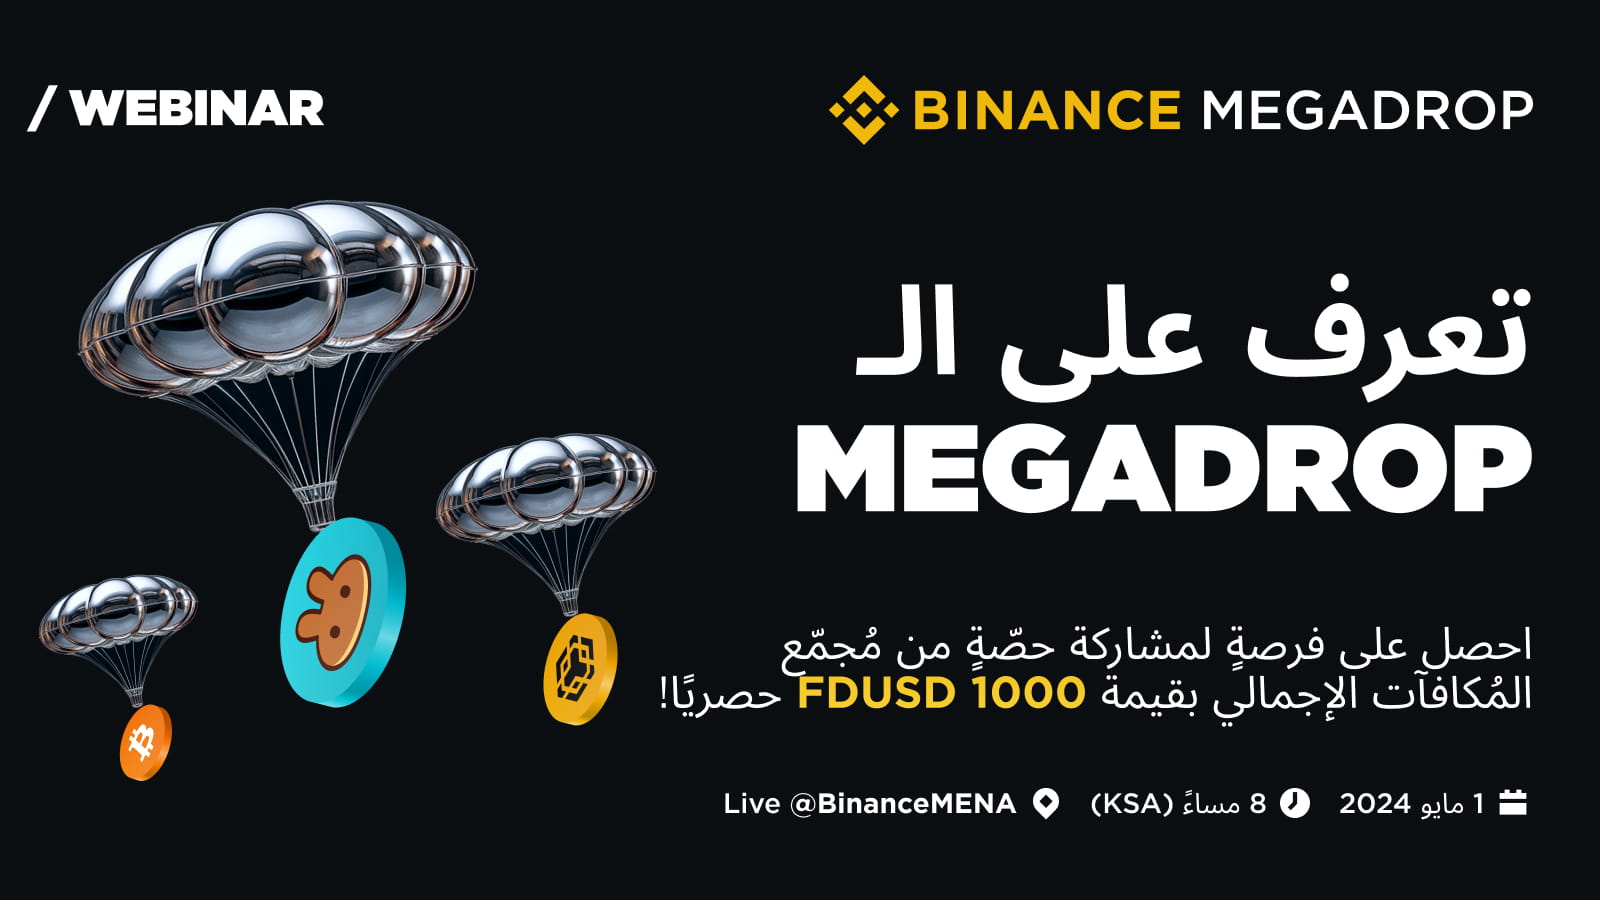 Introducing Binance Megadrop